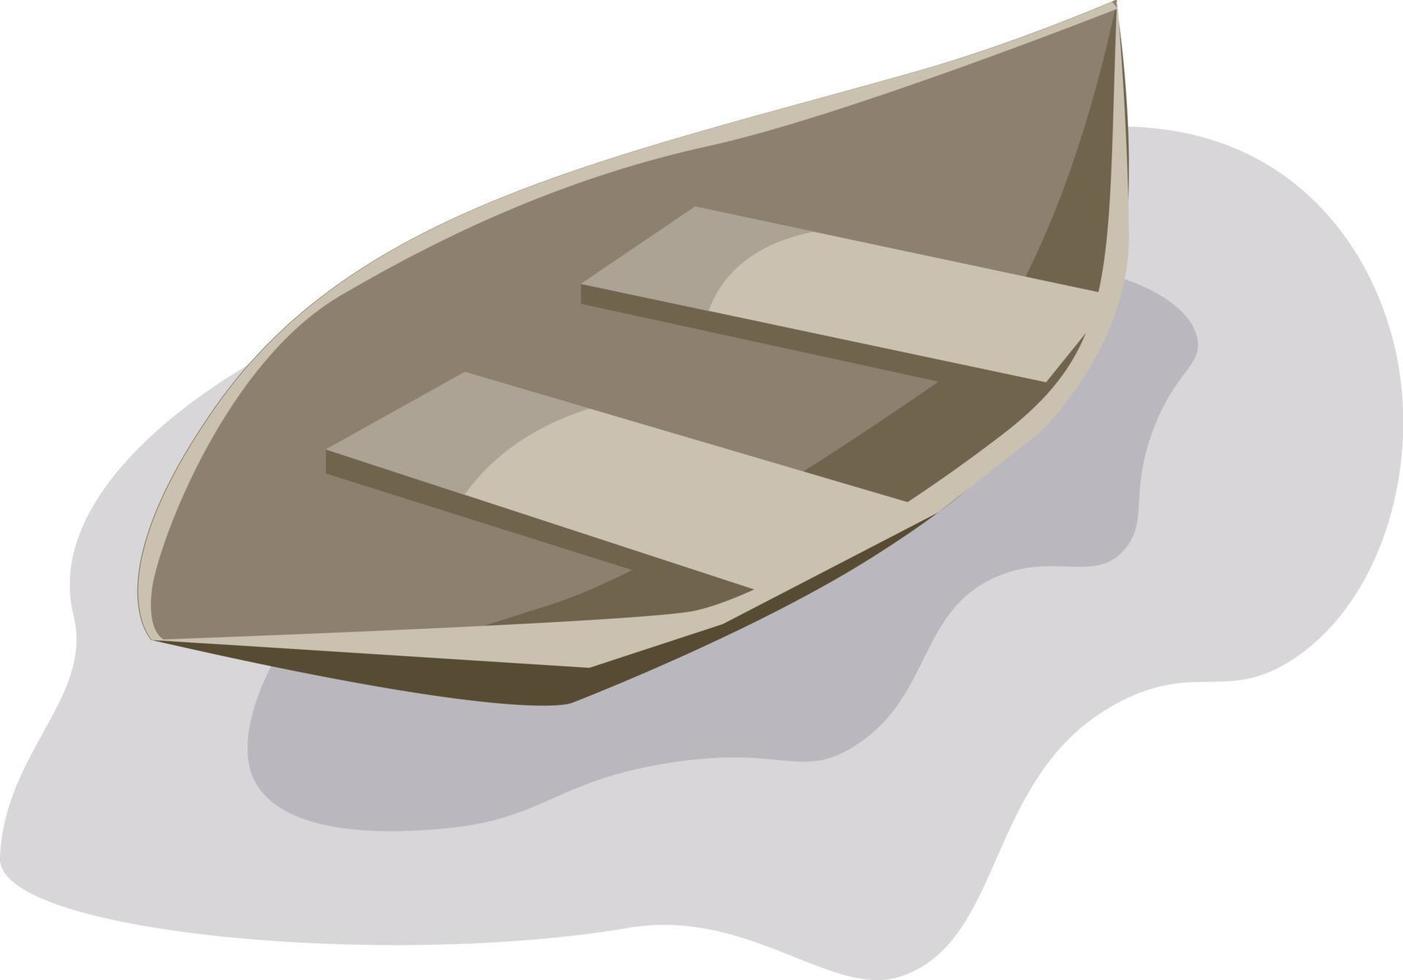 Kanu auf dem Wasser, Illustration, Vektor auf weißem Hintergrund.